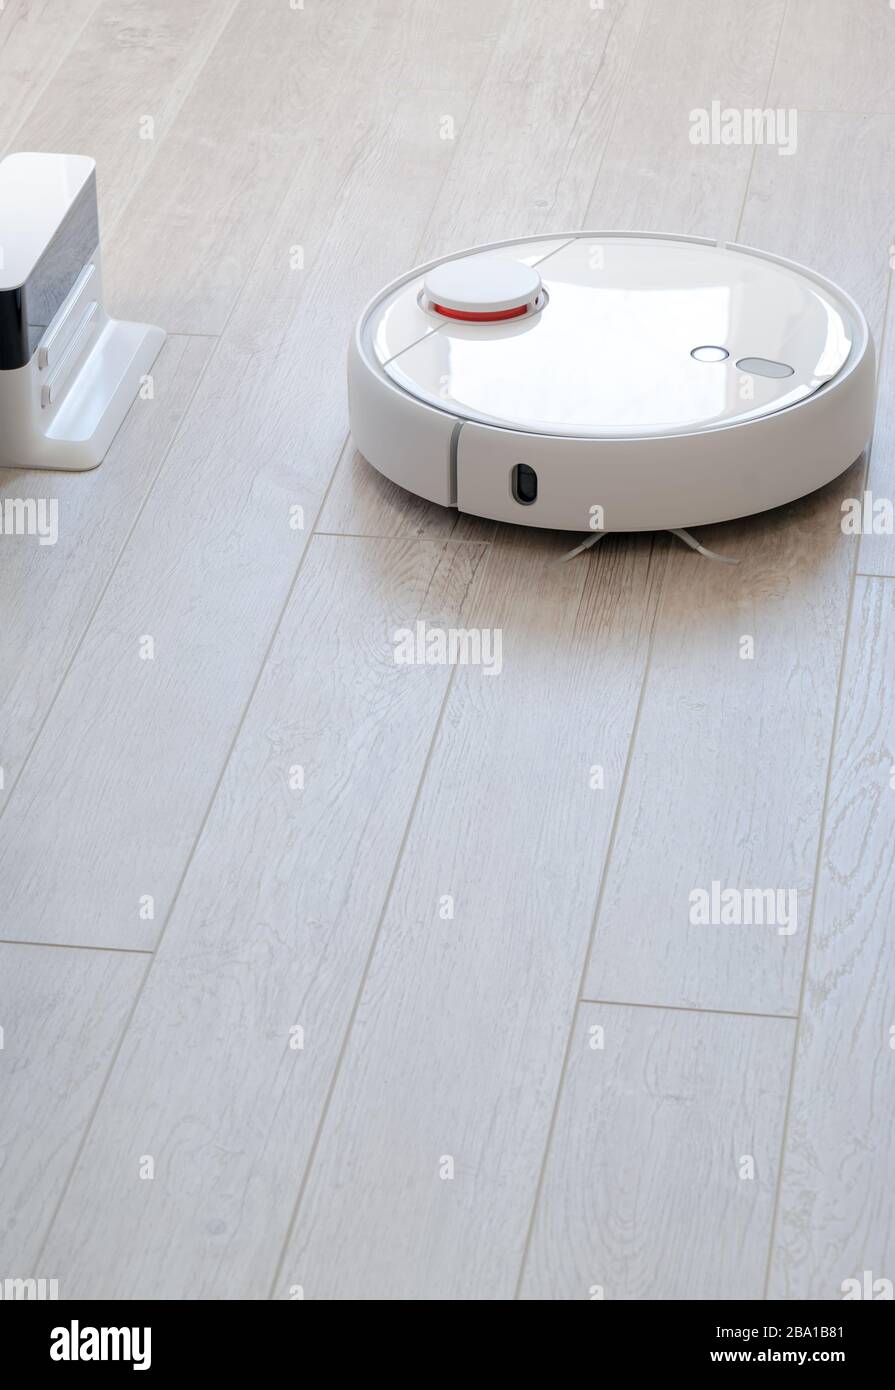 Weißer runder roboticobotischer Staubsauger auf Laminat - Technologie Hausarbeit Stockfoto